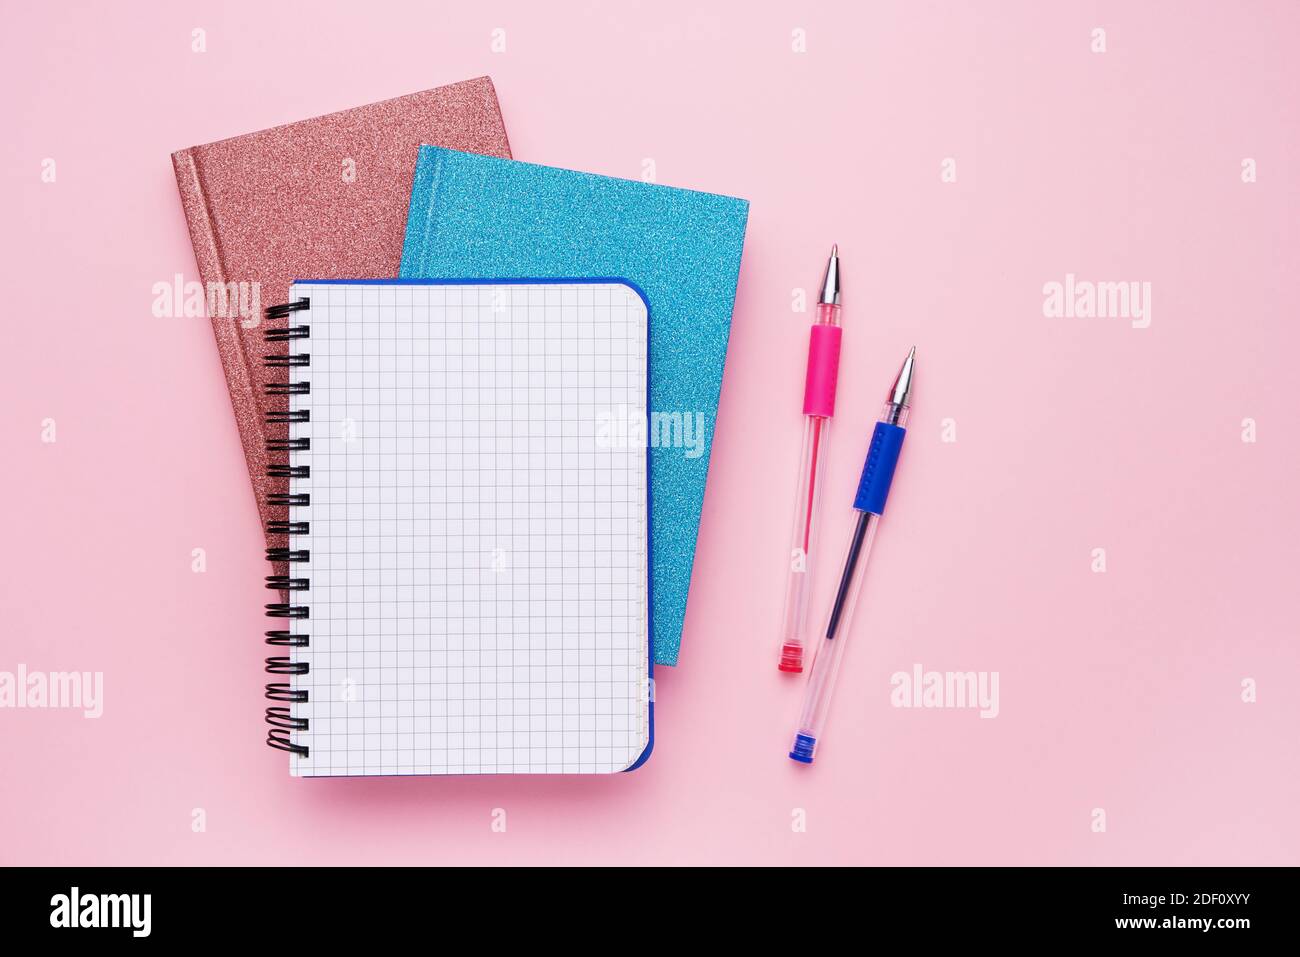 Spiral Notizblock mit Stiften als Mockup für Ihr Design. Notizbücher auf pastellrosa Hintergrund. Zurück zur Schule Konzept. Platz kopieren, Draufsicht. Stockfoto